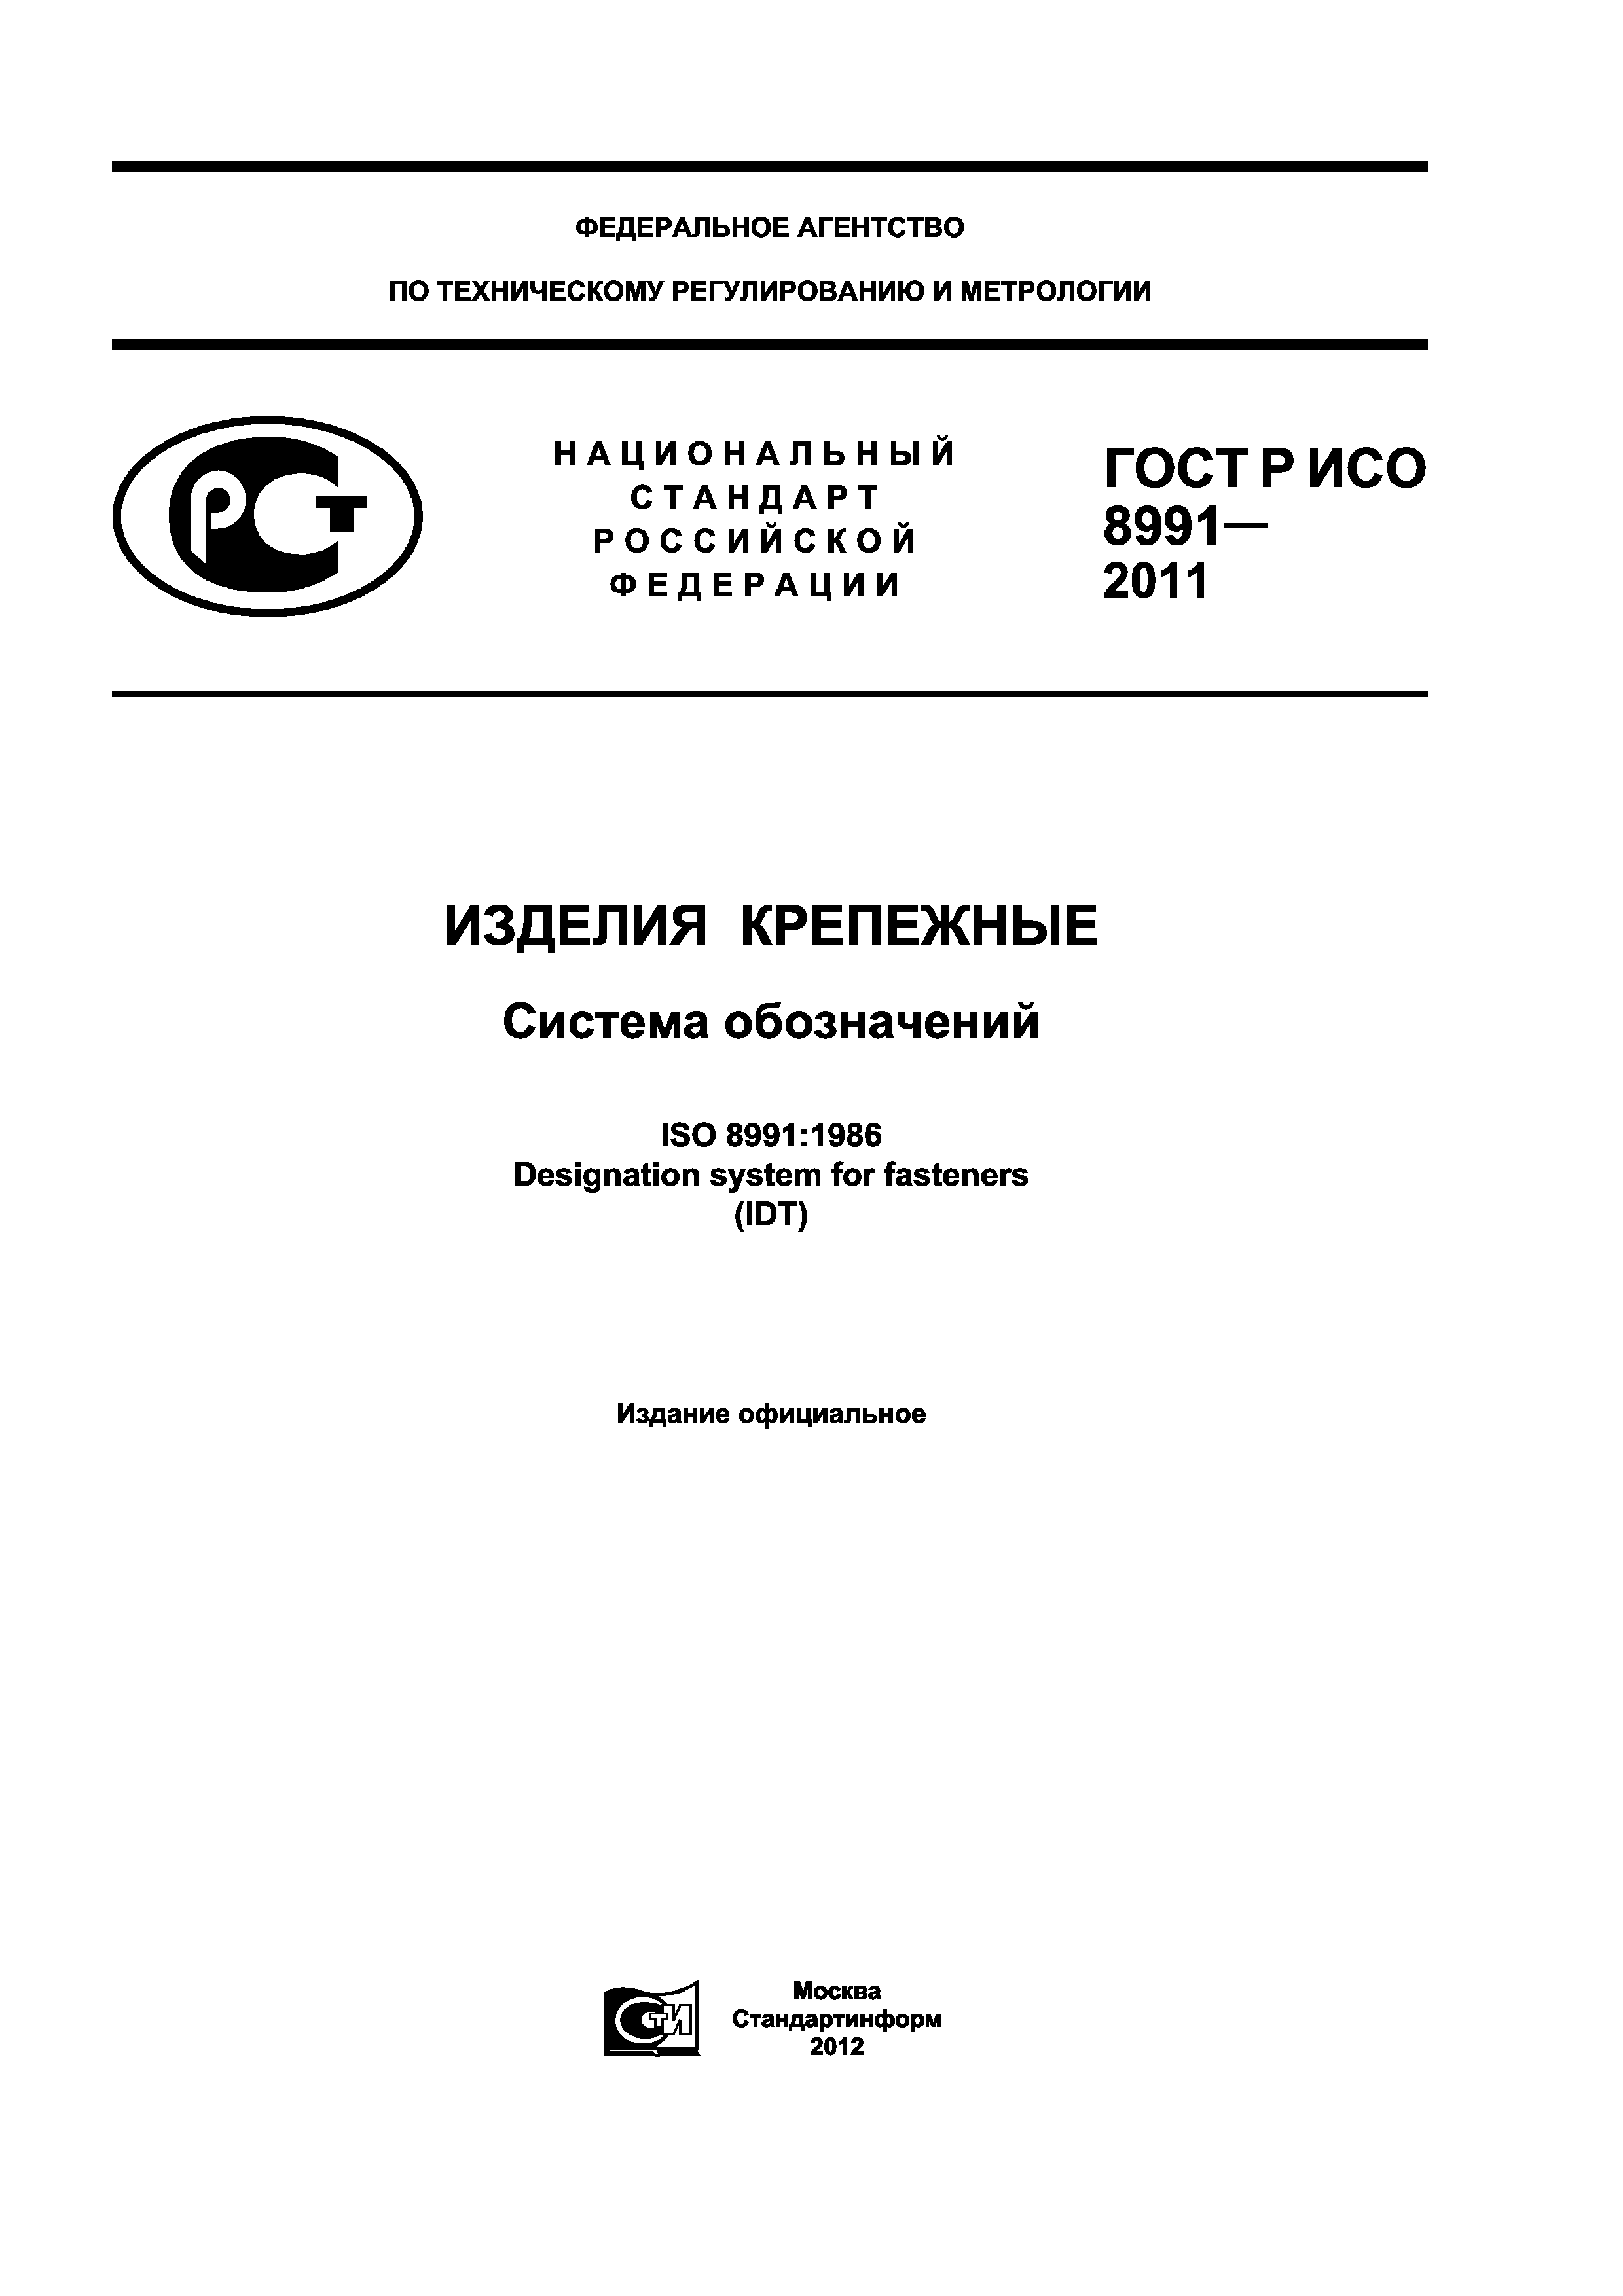 ГОСТ Р ИСО 8991-2011